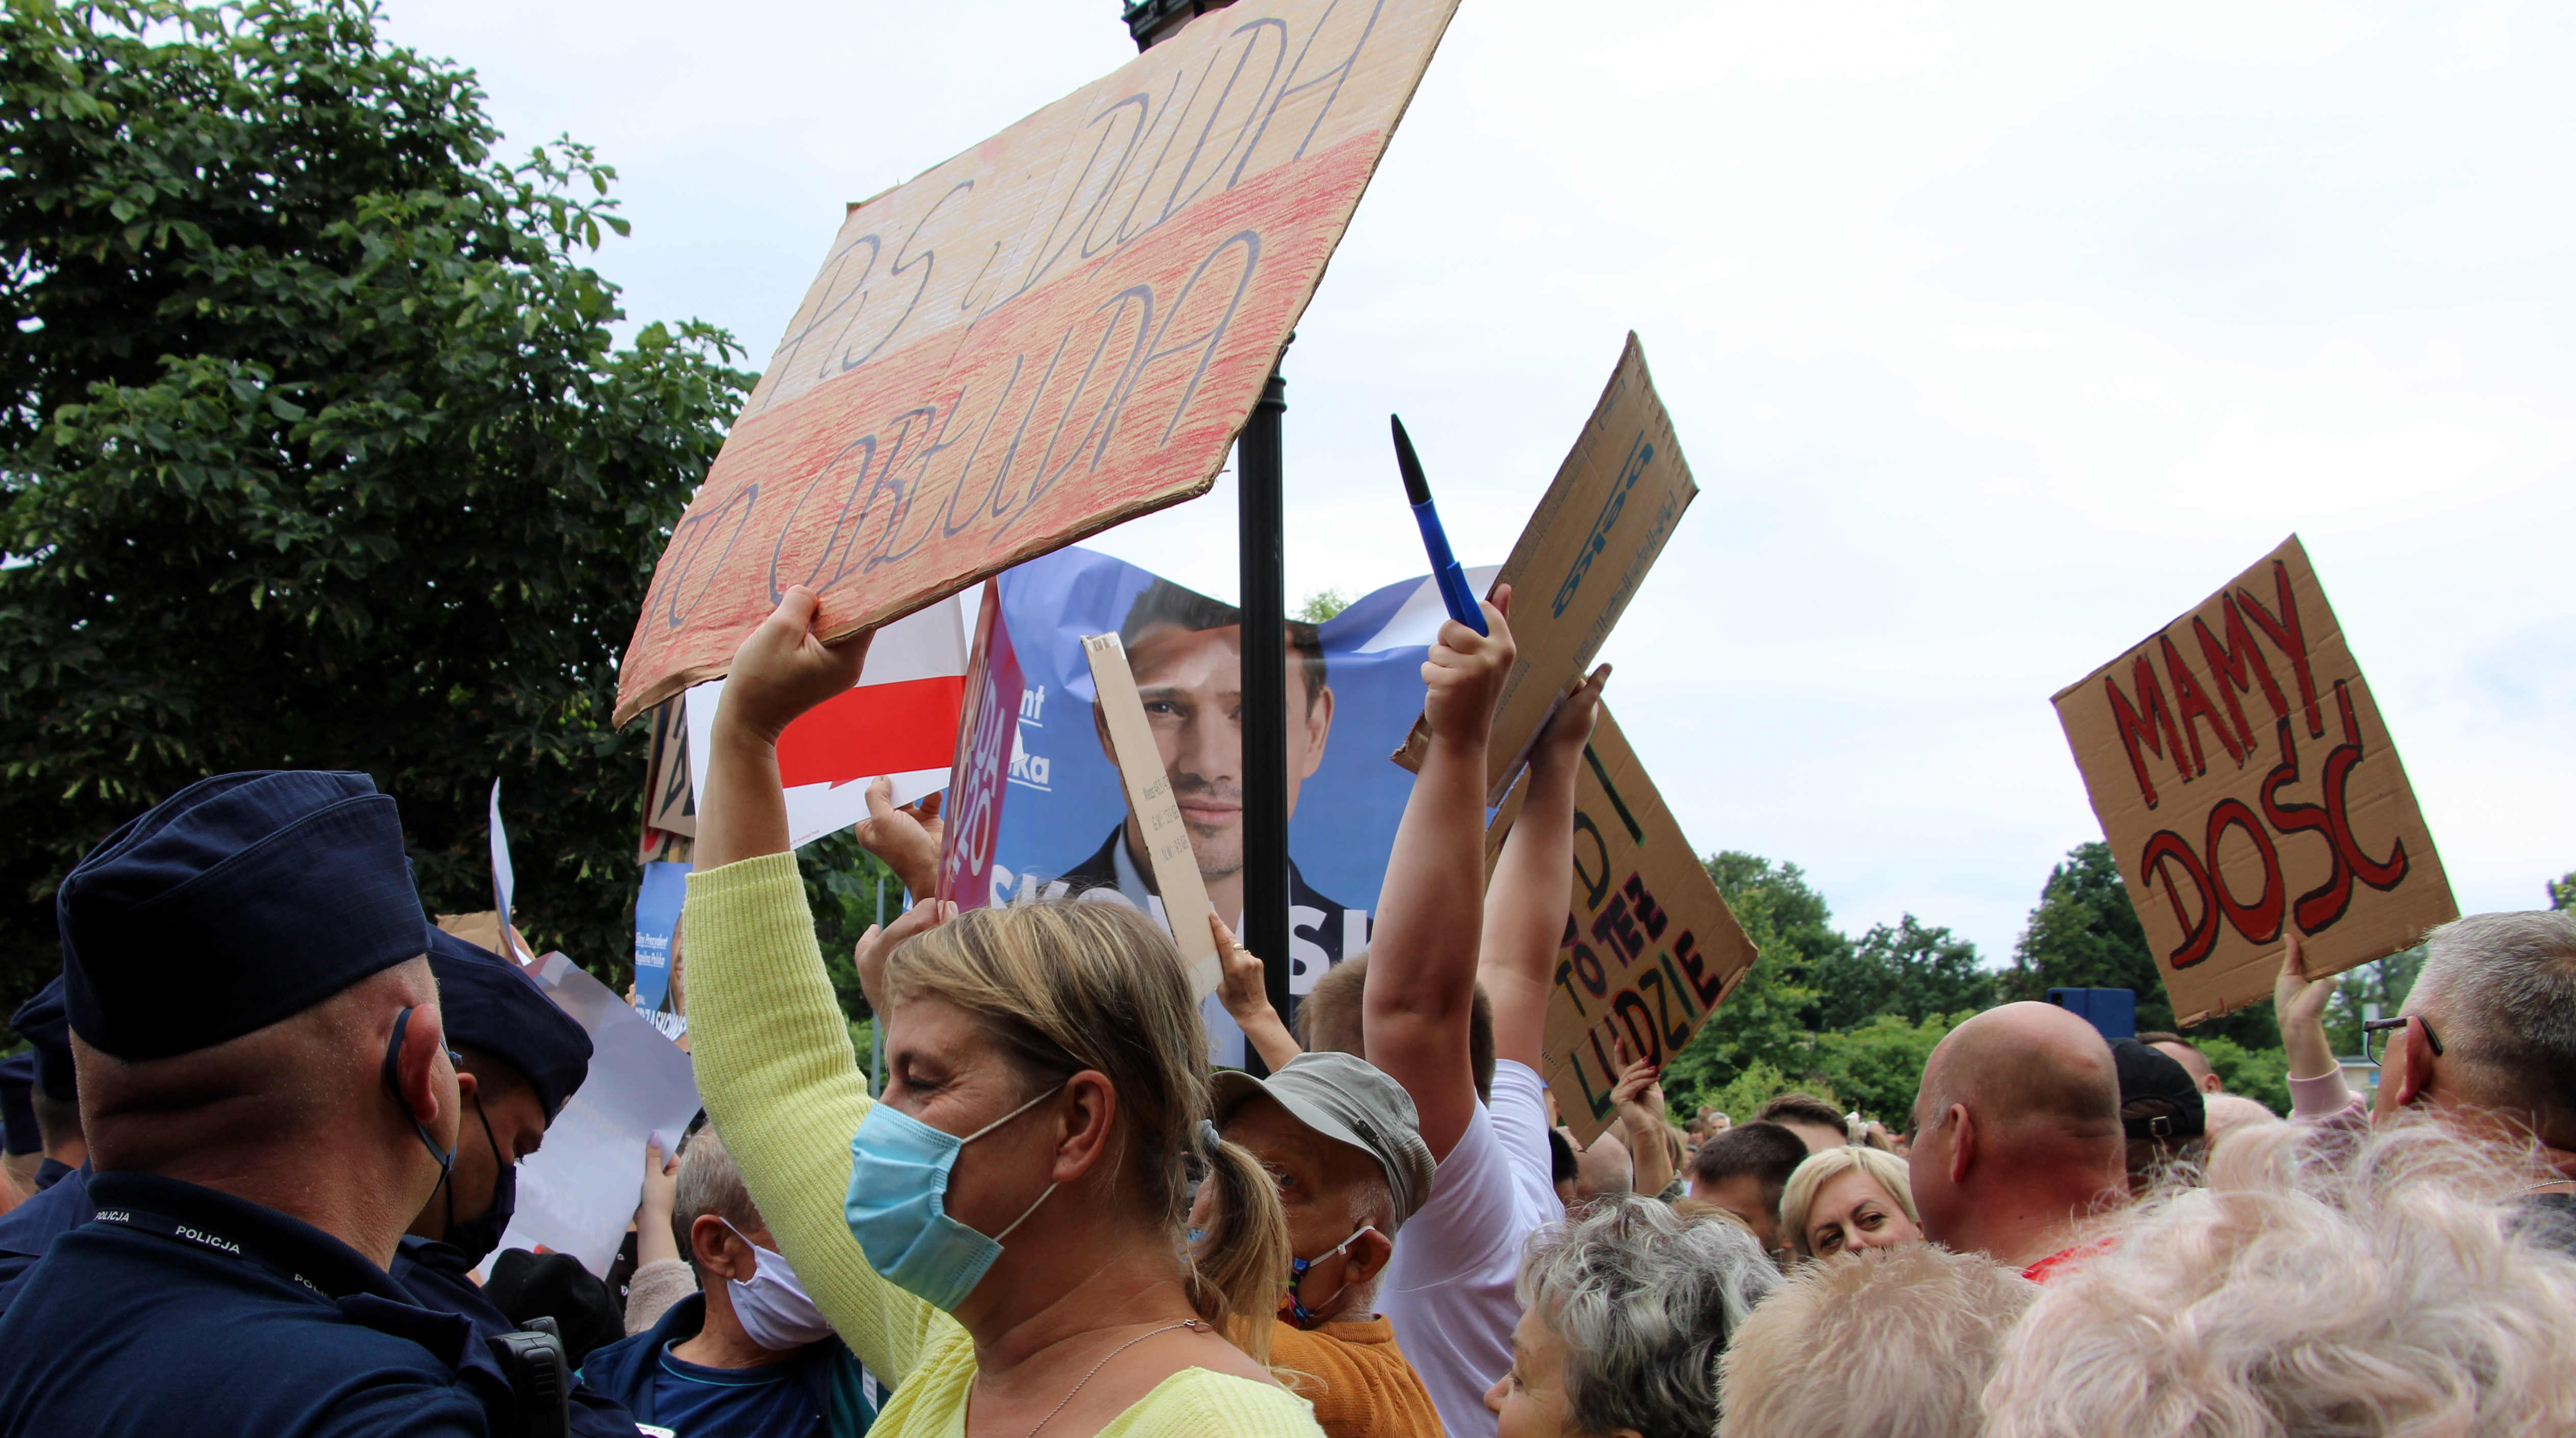 ŁUKÓW: Gorąco na wiecu Prezydenta. "PiS i Duda to obłuda", "Andrzej Duda nasz prezydent" (GALERIA) - Zdjęcie główne